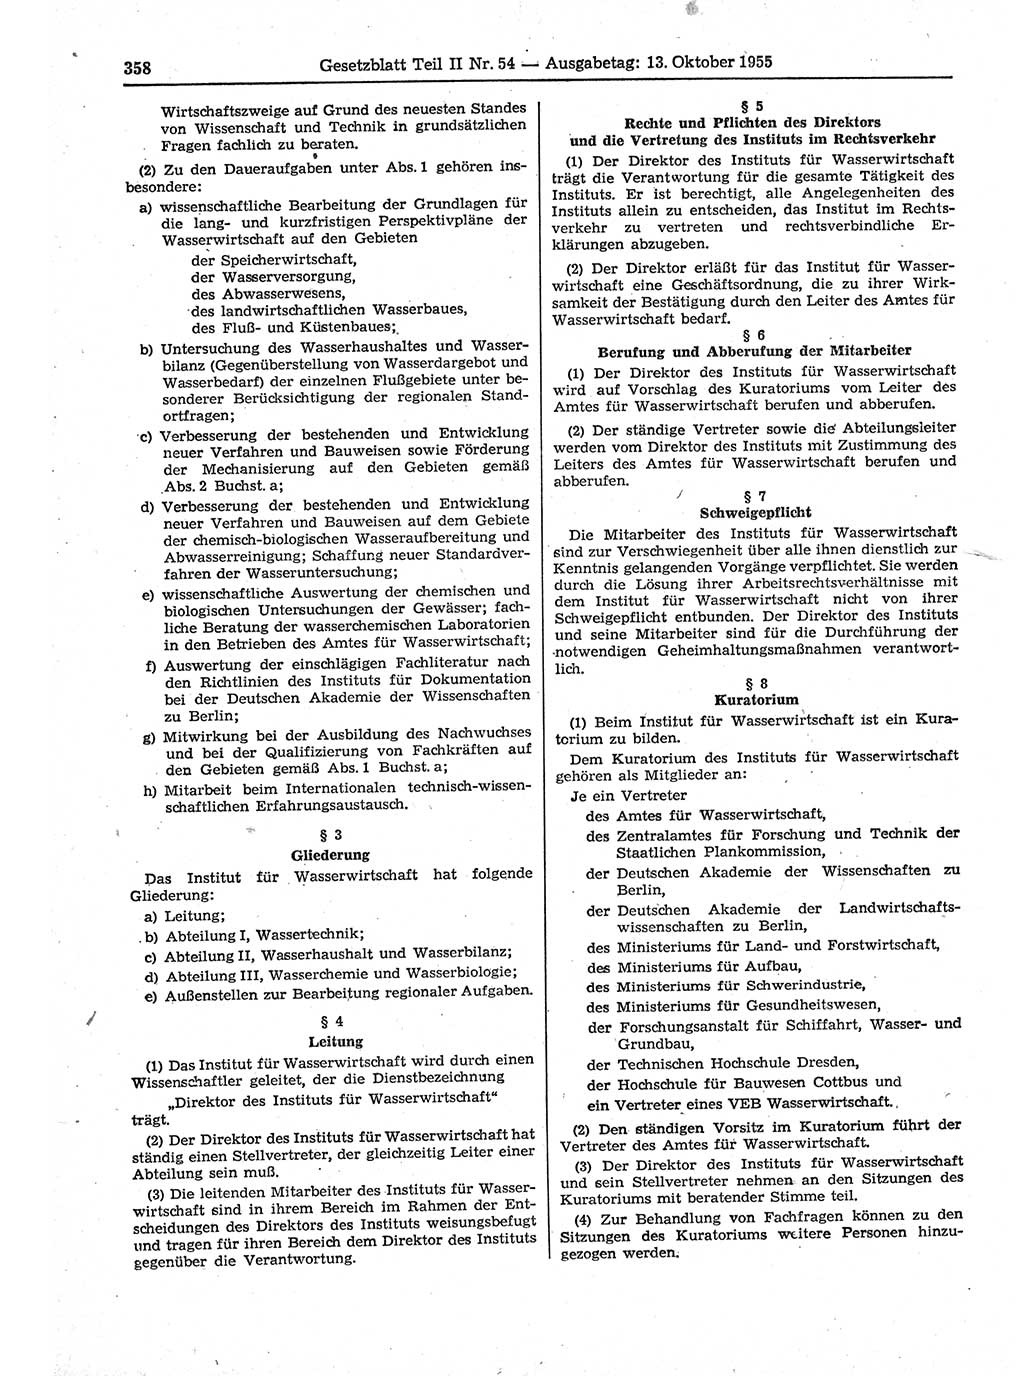 Gesetzblatt (GBl.) der Deutschen Demokratischen Republik (DDR) Teil ⅠⅠ 1955, Seite 358 (GBl. DDR ⅠⅠ 1955, S. 358)